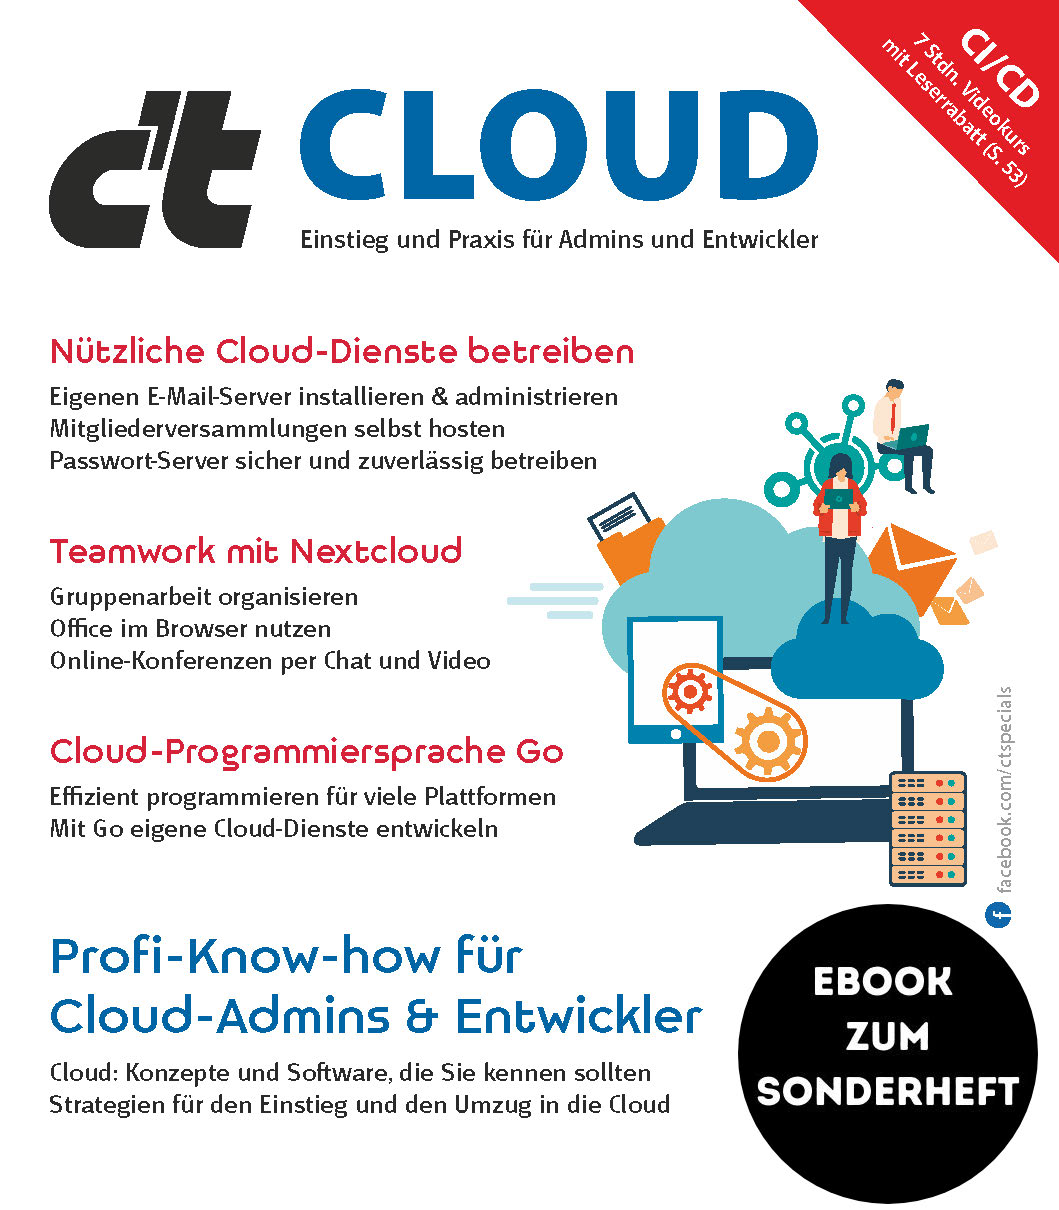 c't Cloud 2021 (eBook zum Sonderheft)